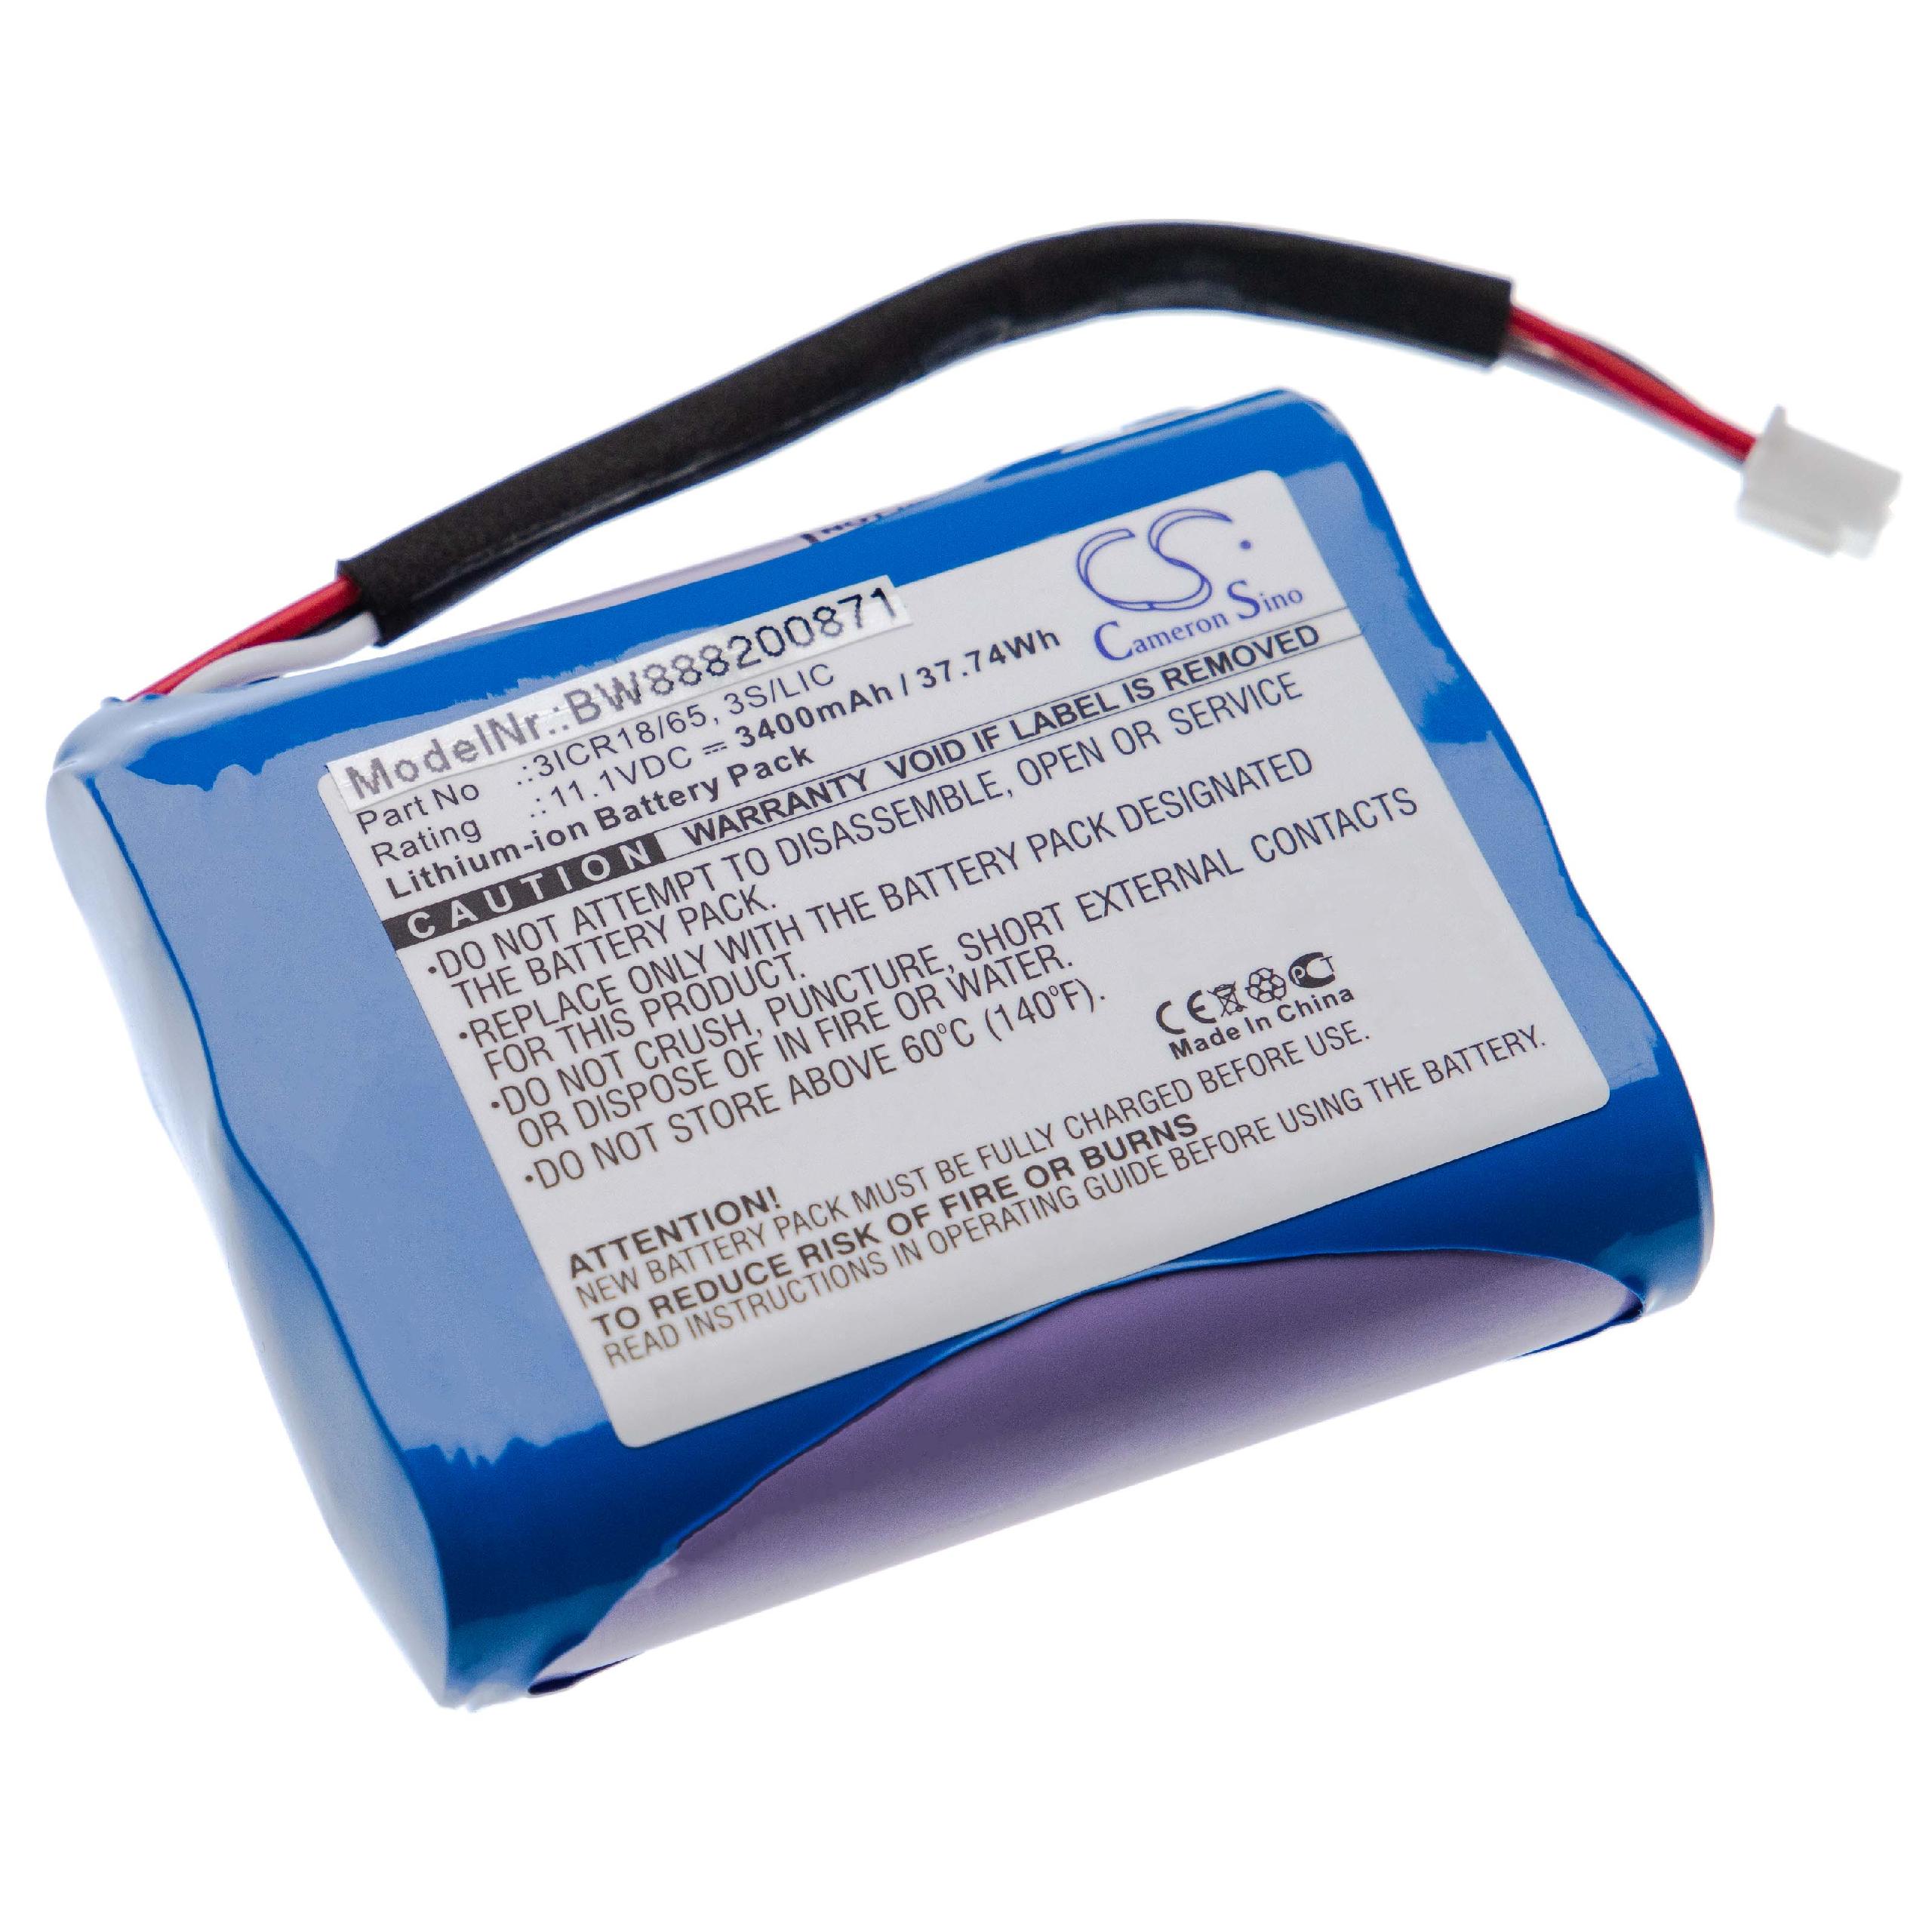 Batteria sostituisce Bang & Olufsen 3ICR18/65, 3S/LIC per altoparlanti Bang & Olufsen - 3400mAh 11,1V Li-Ion